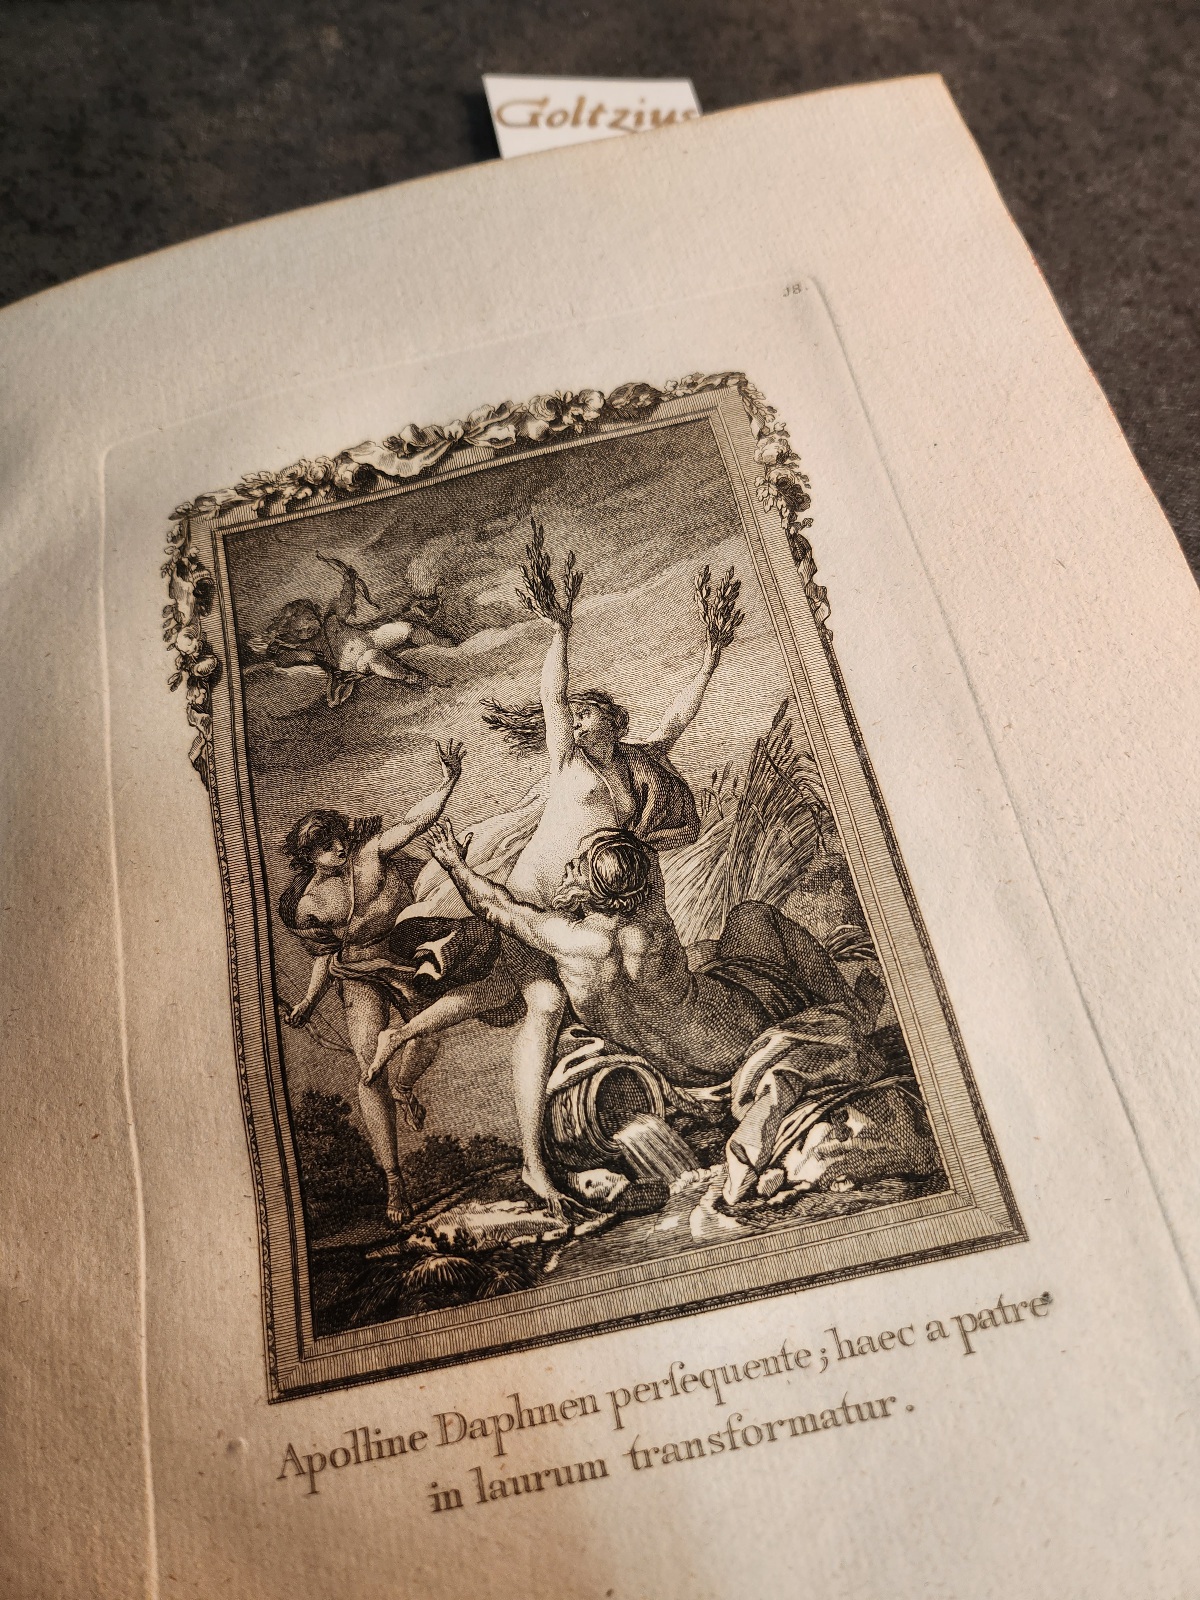 OVIDIUS NASO, PUBLIUS, Ovidii Metamorphoses aeri incisae ad exemplar optimorum Gallicae Gentis pictorum Parisiis